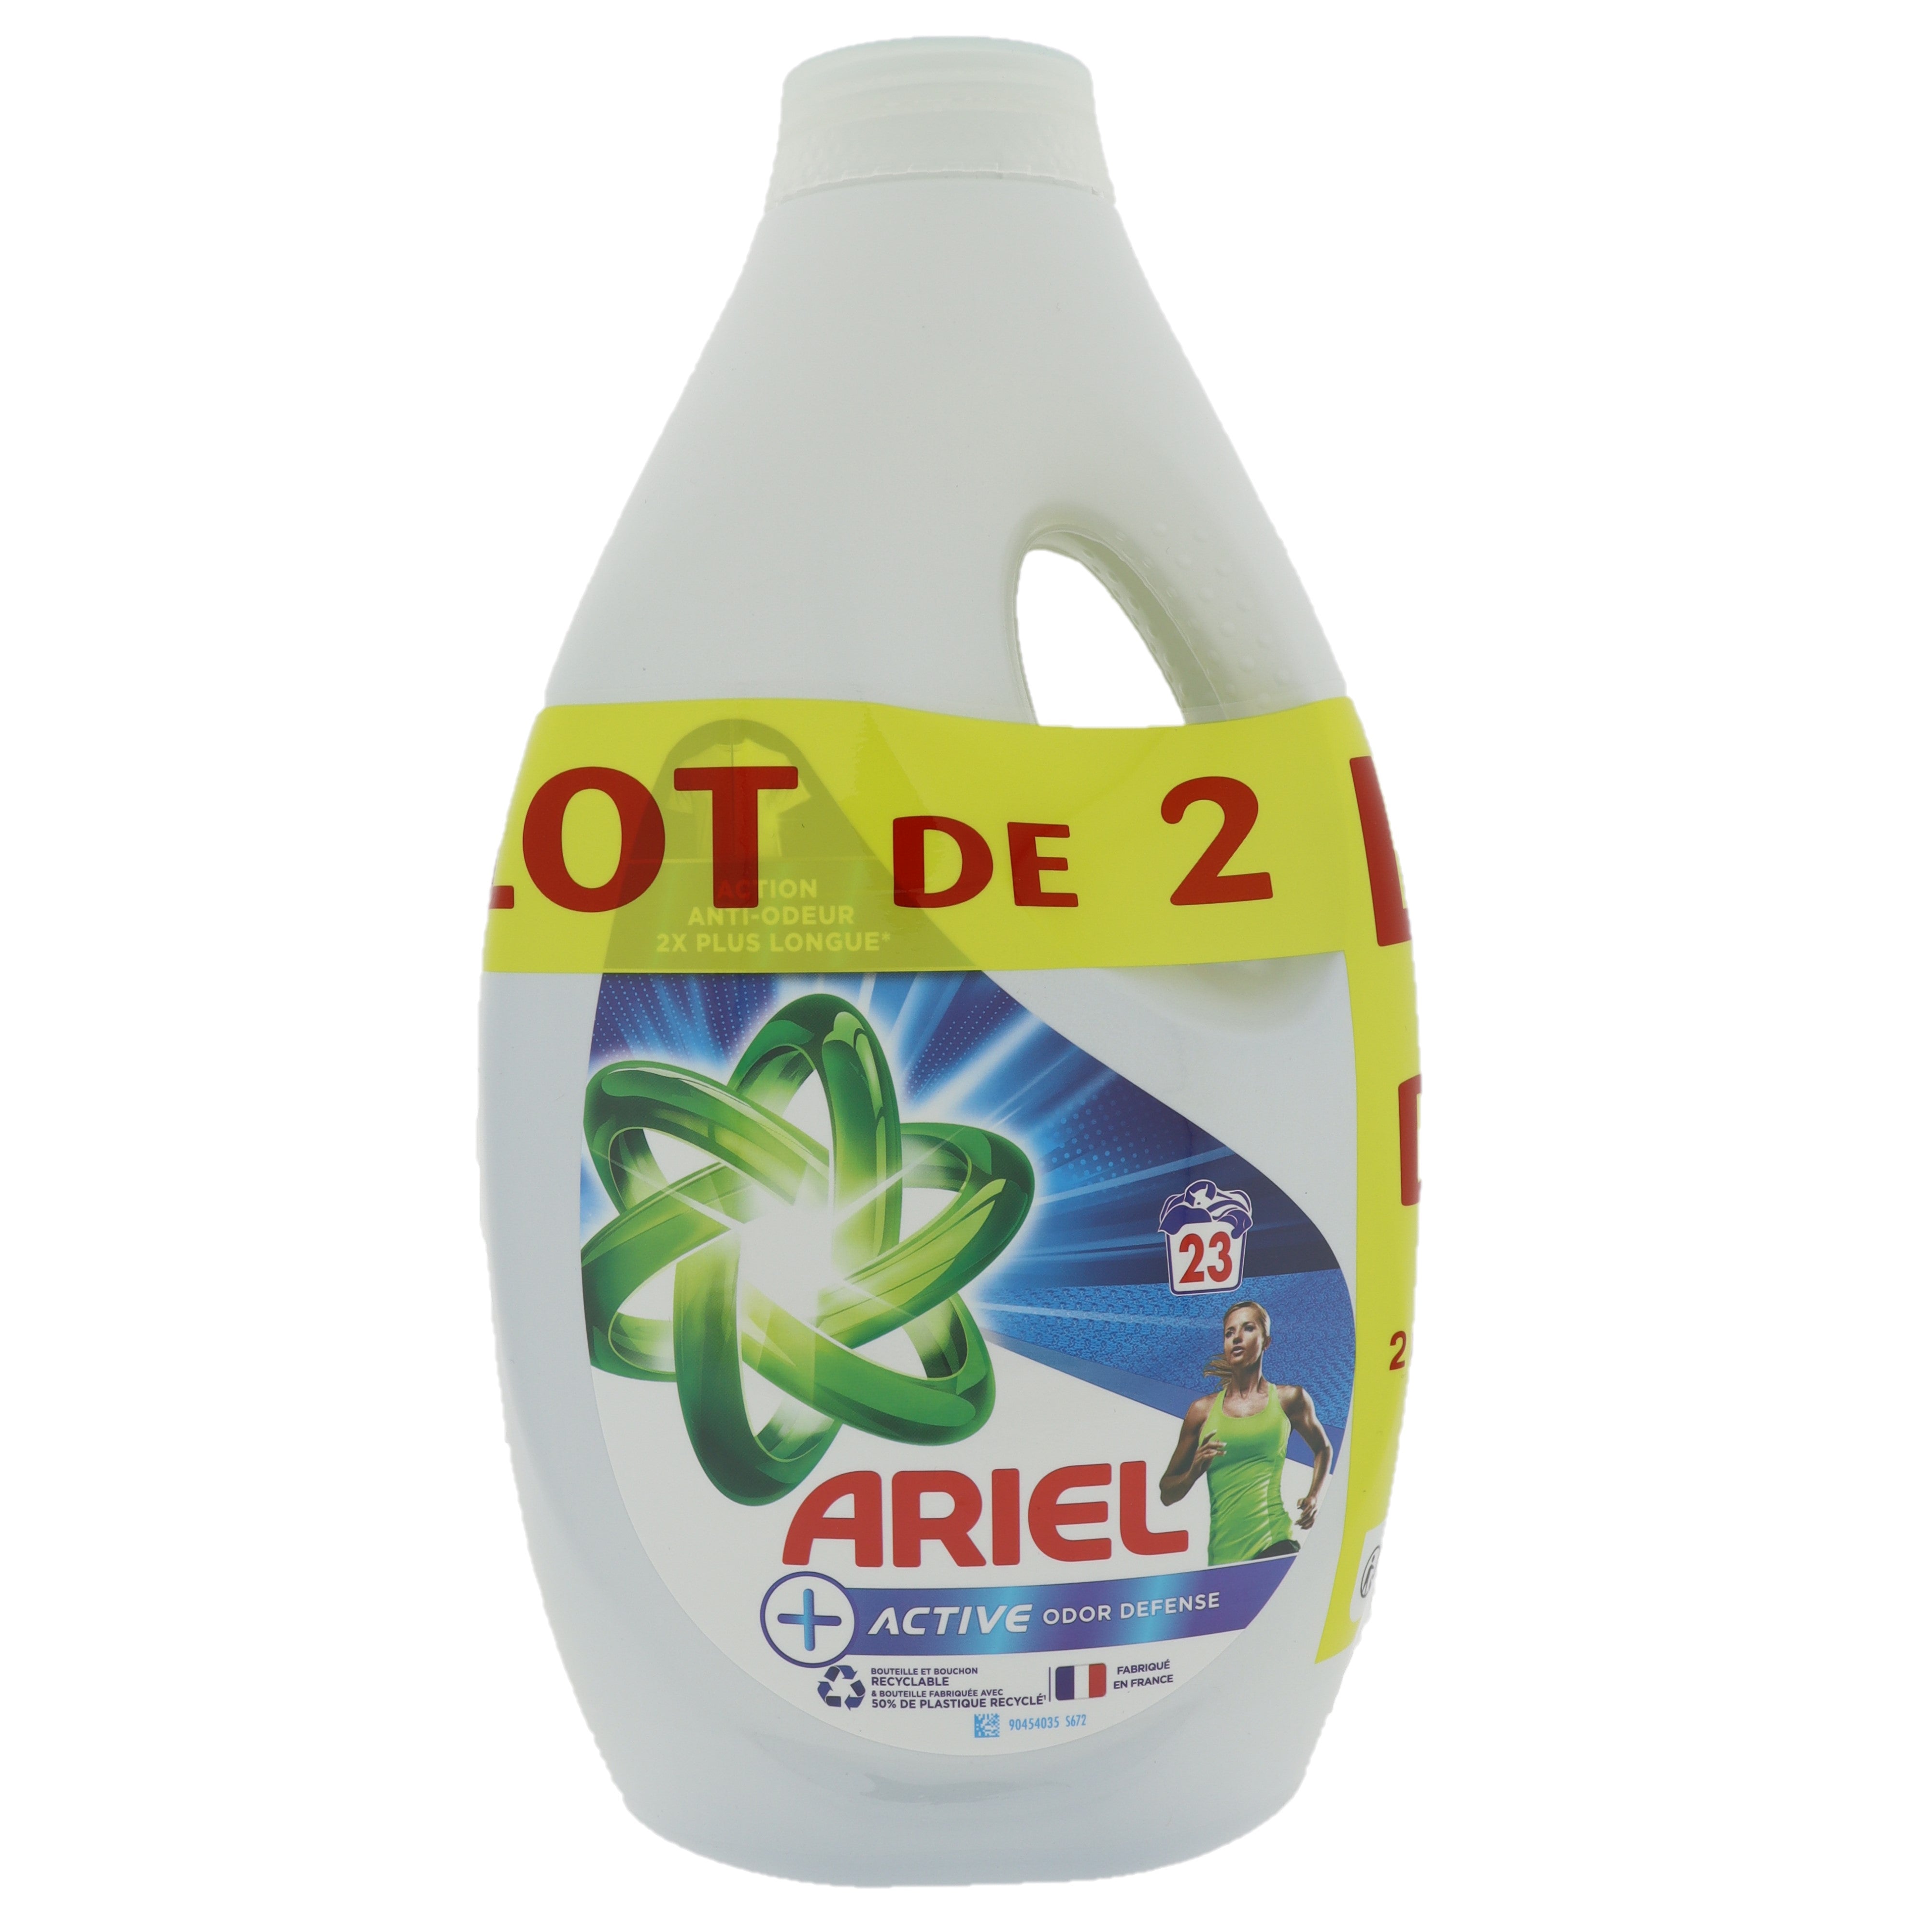 Ariel Active Odor Defense vloeibaar wasmiddel 2-pack 1.15L 46 wasbeurten